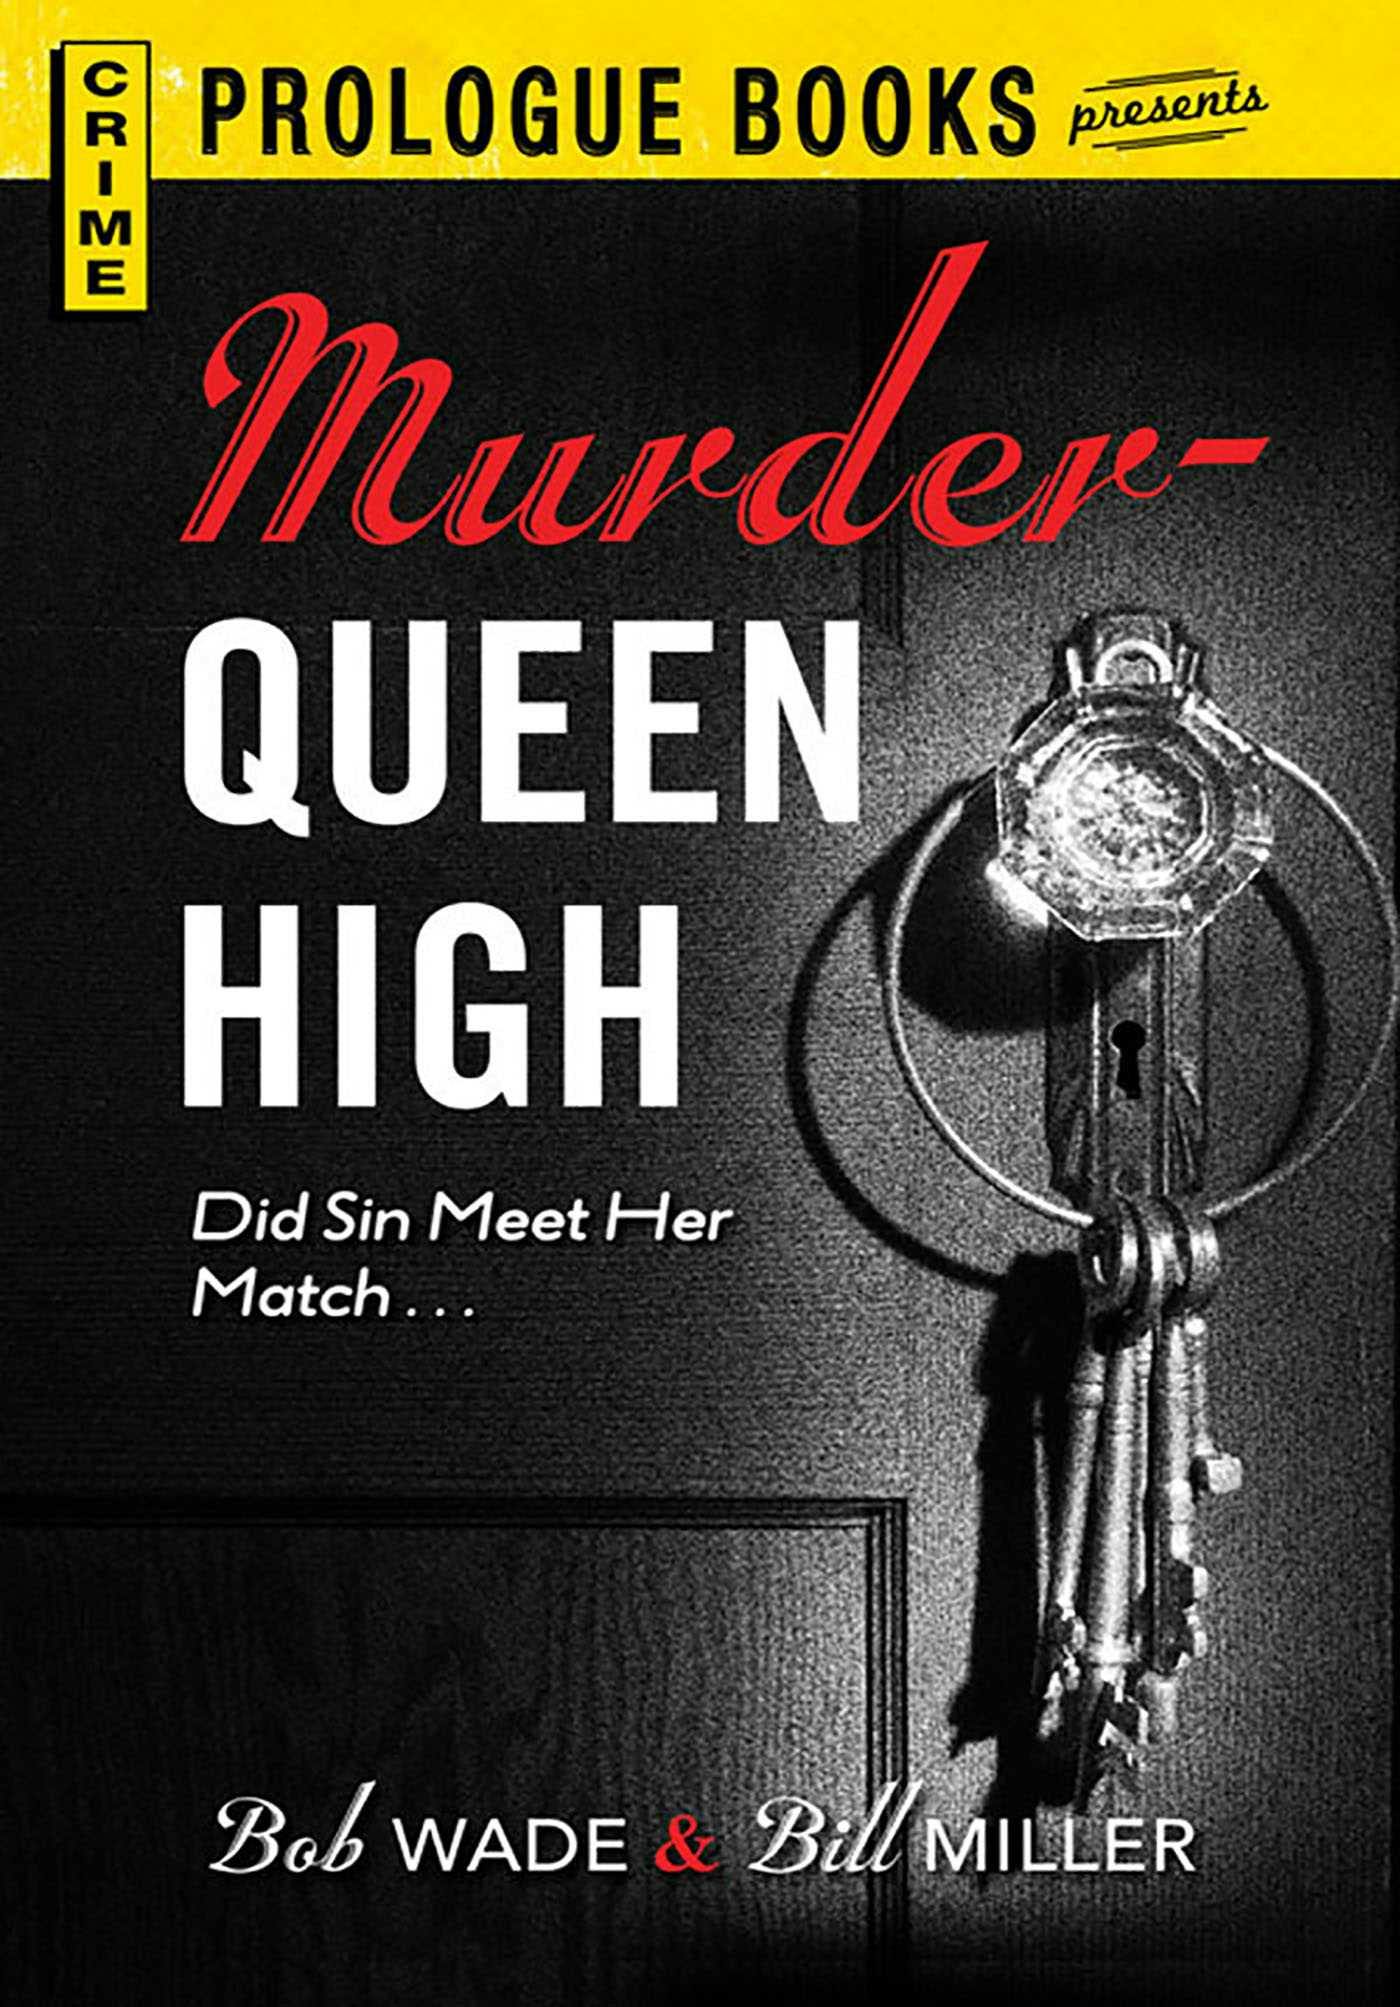 Murder Queen High - Bill Miller, Bob Wade